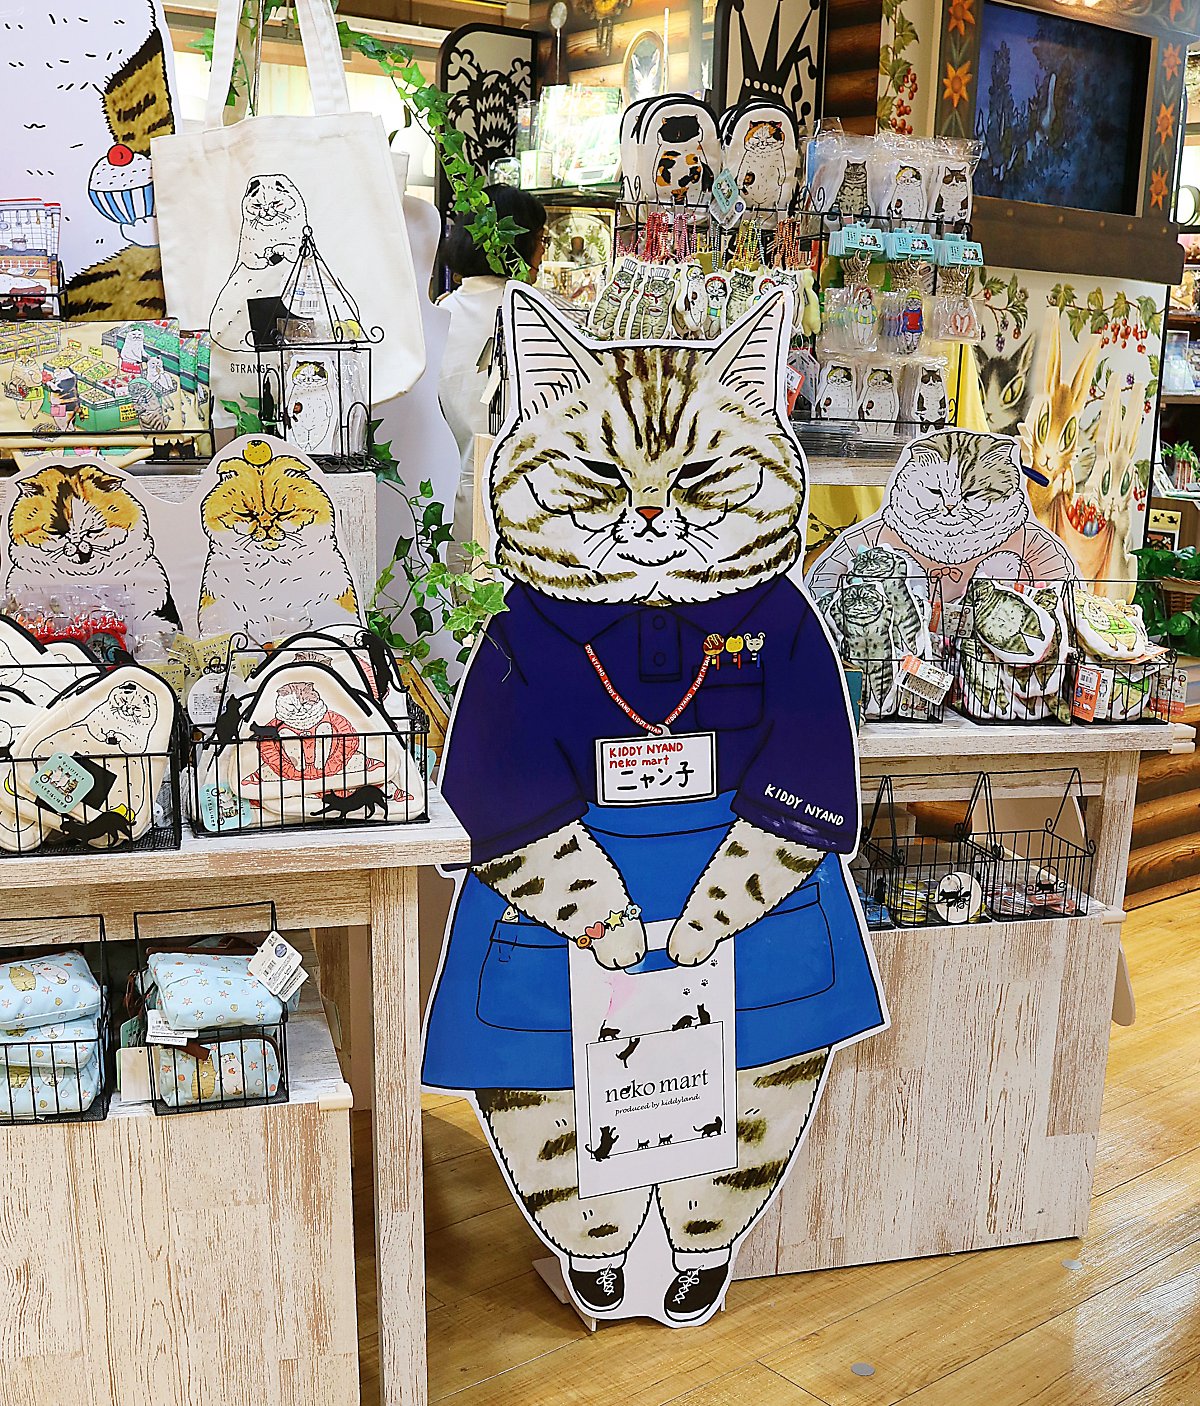 레알]고양이 혼자 두고 2박3일 일본여행 노하우(사각지대 없는 강아지Cctv 앱봇라일리) : 네이버 포스트